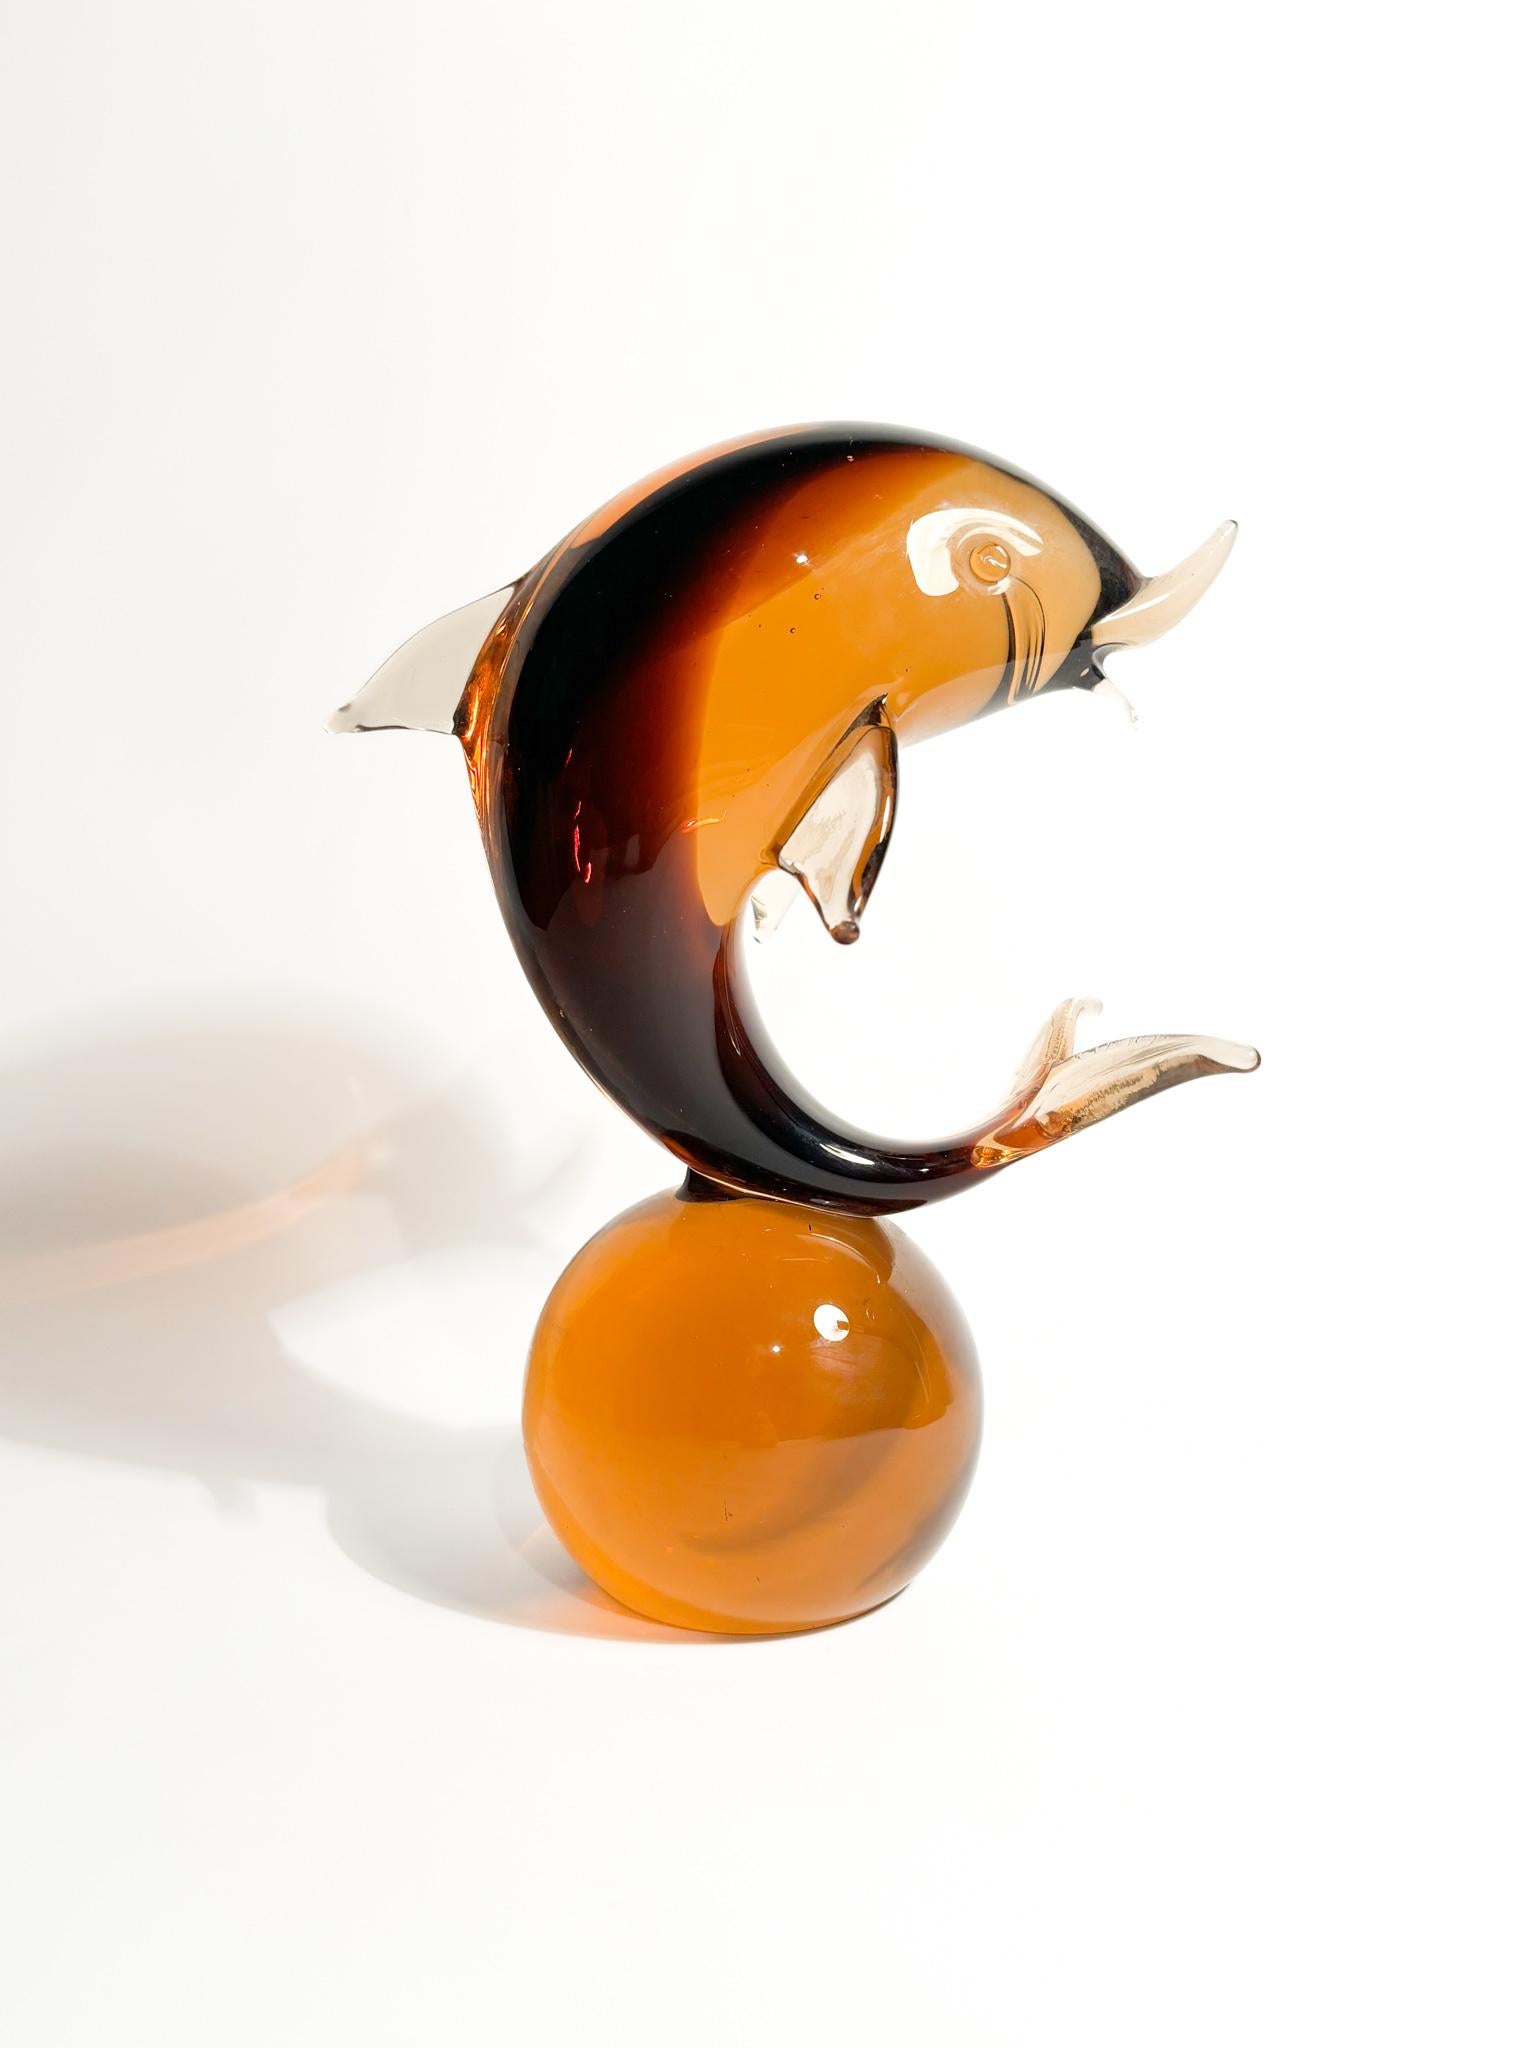 Sculpture de dauphin sur une boule orange en verre de Murano, dont la création est attribuée à Seguso dans les années 1960.

Ø 9 cm Ø 19 cm h 23 cm

Seguso est un nom de famille synonyme de verre de Murano, une forme prestigieuse de verrerie